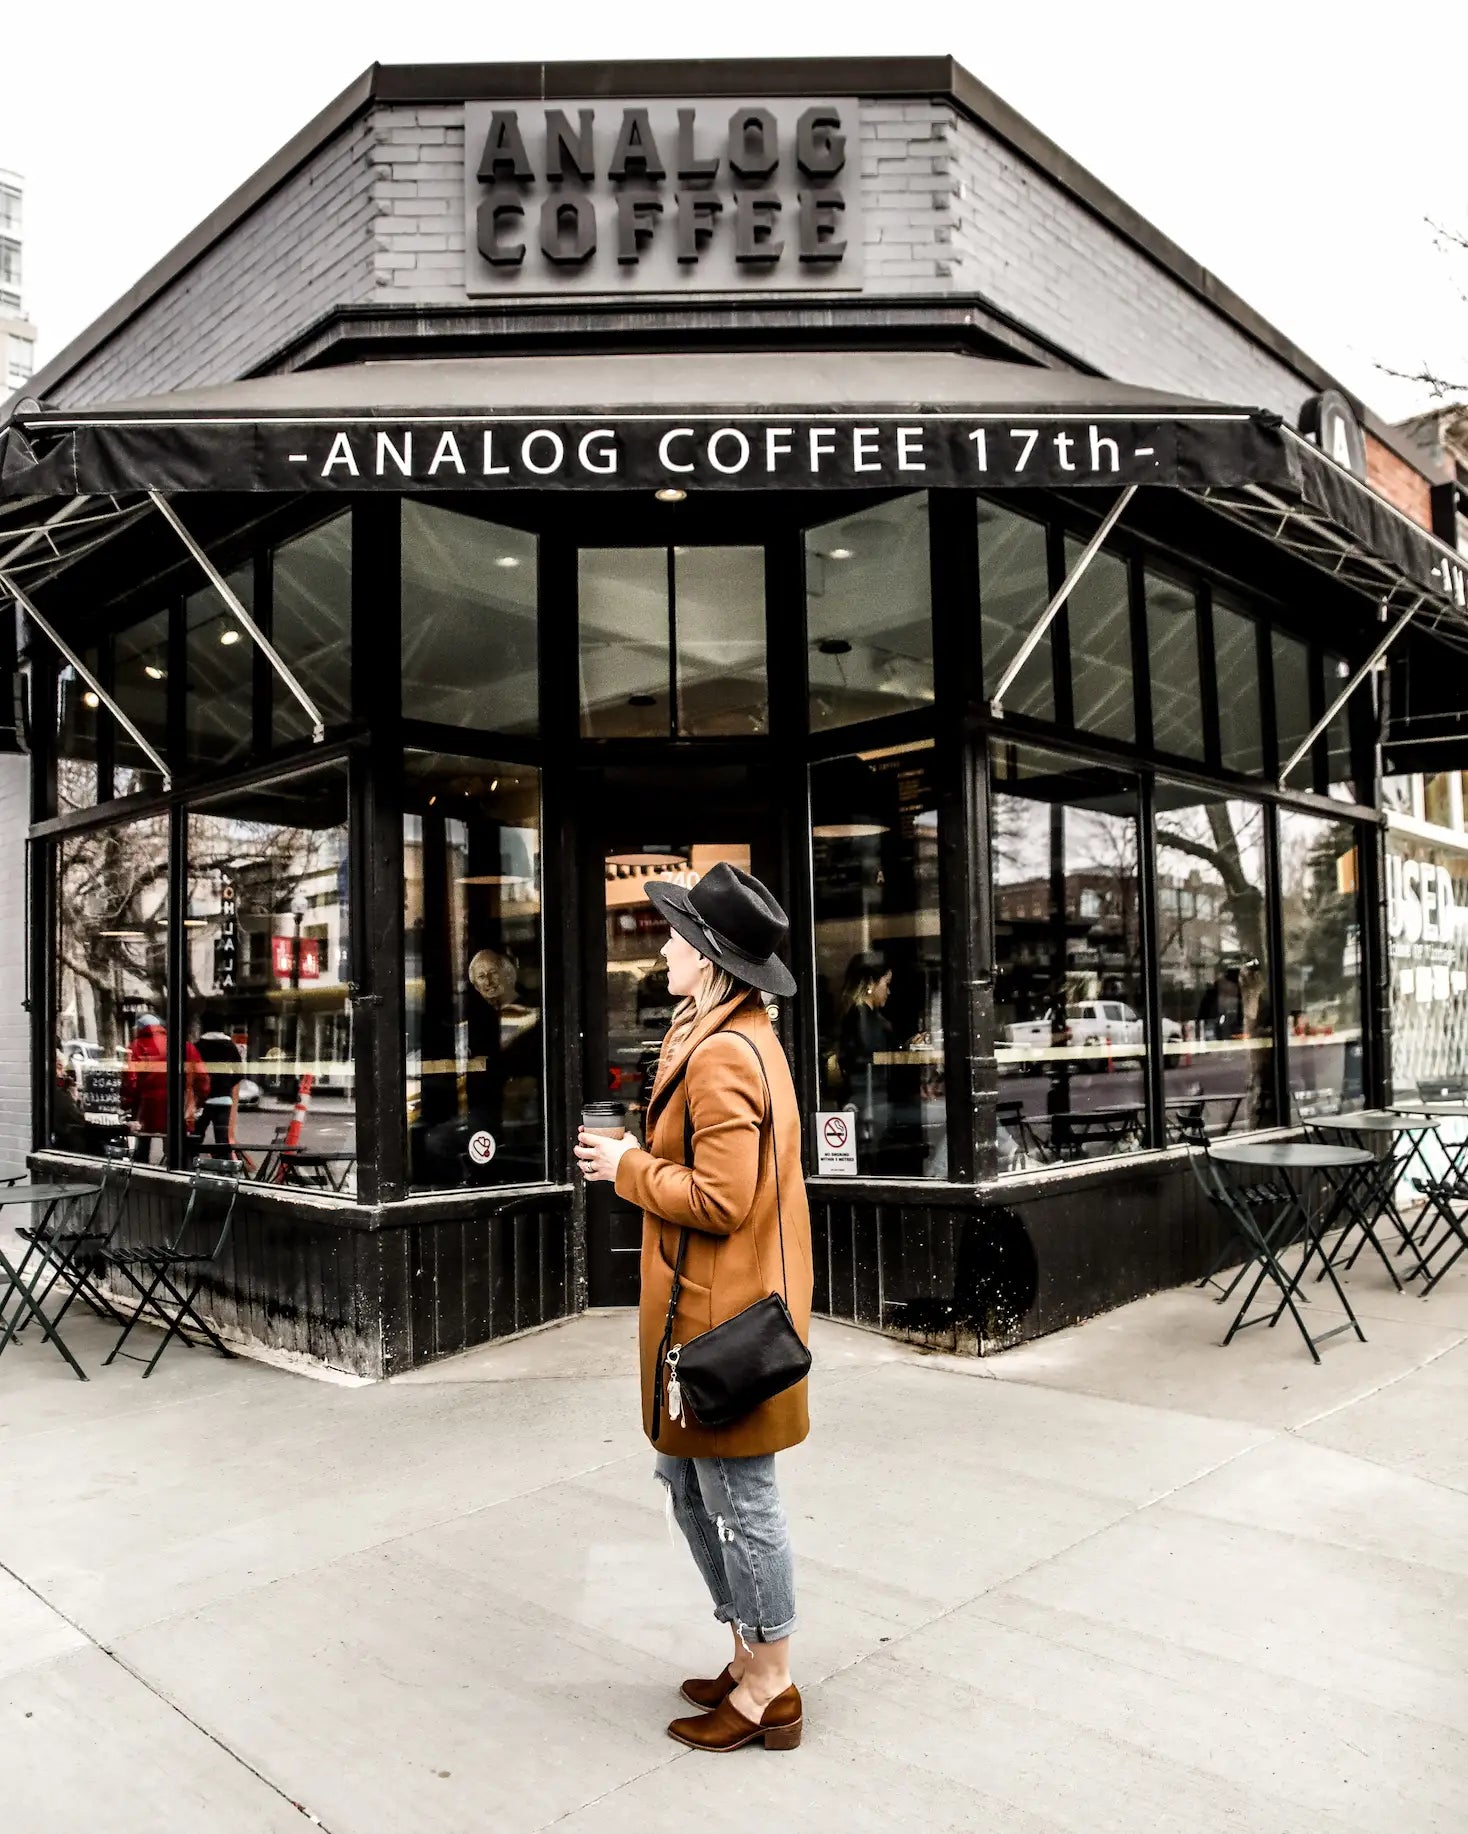 Analog Coffee